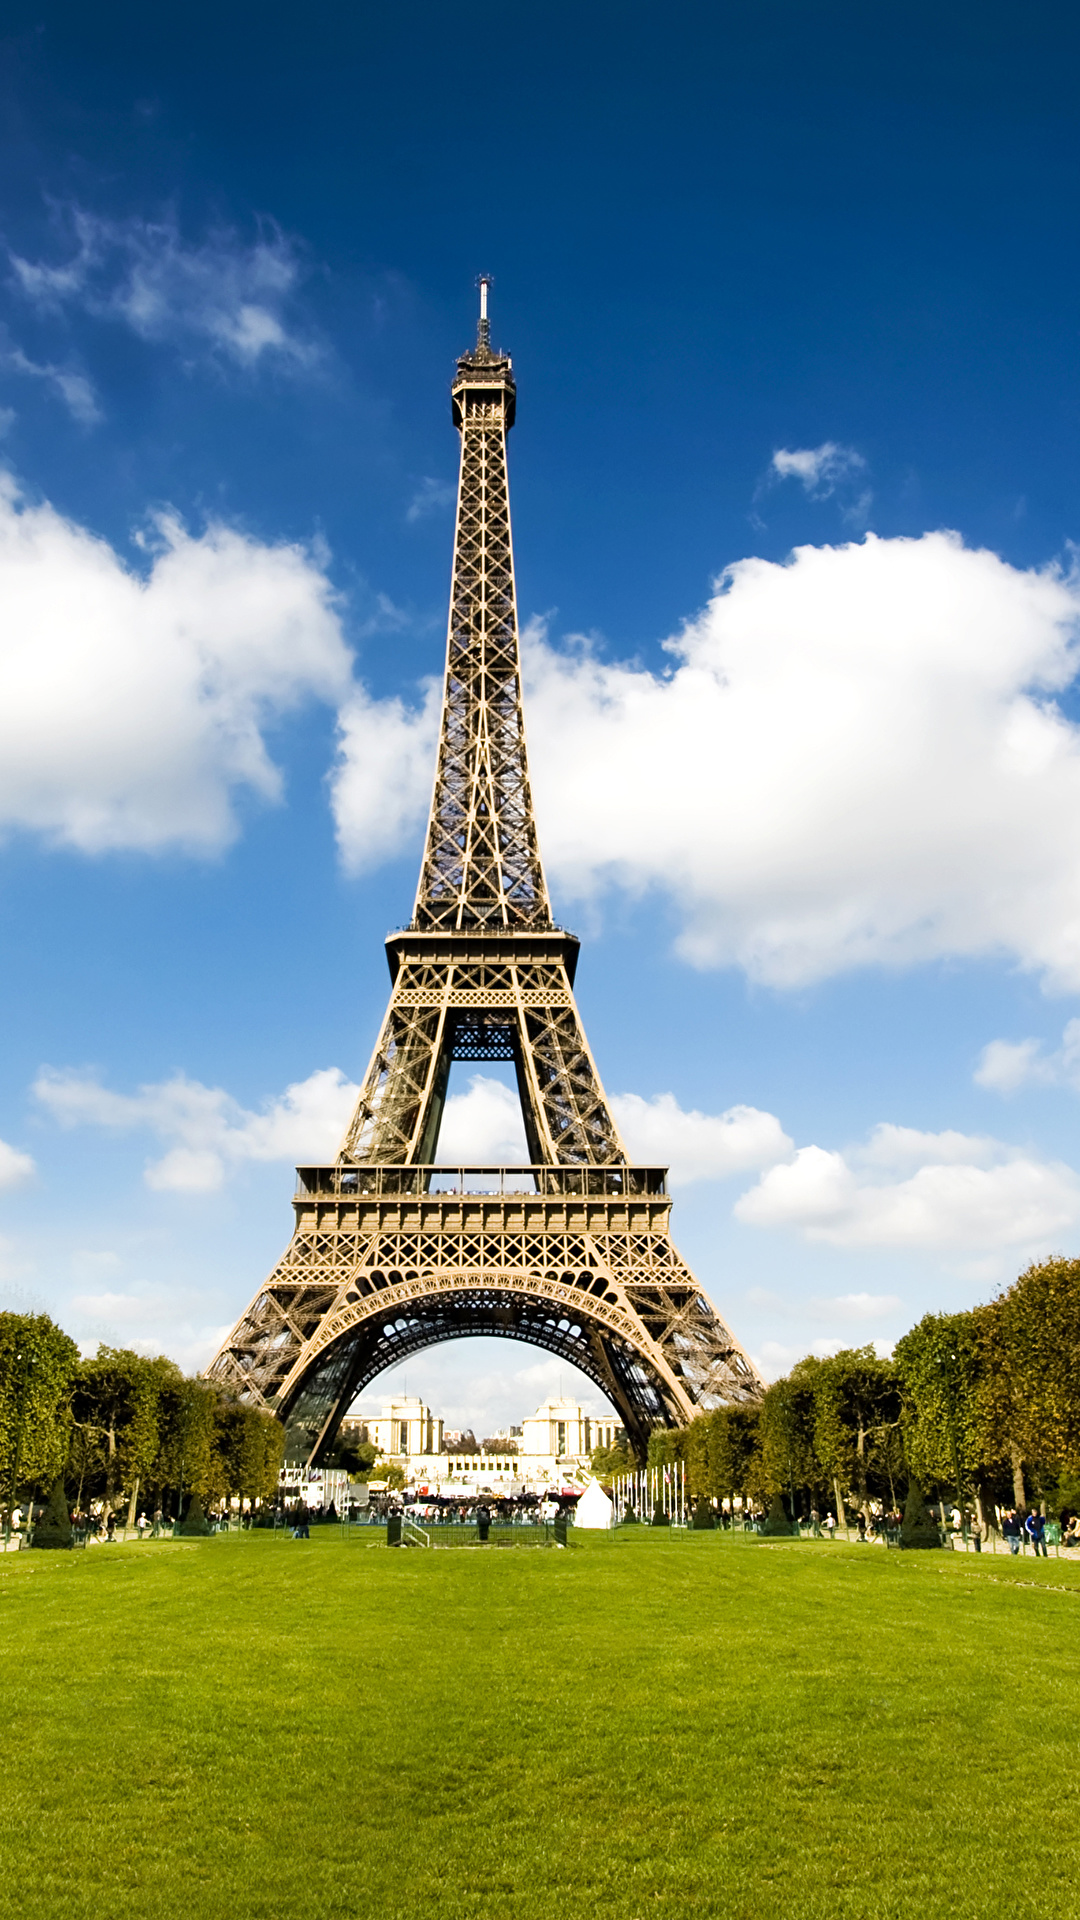 Fondos de Pantalla 1080x1920 Francia Parque Torre Eiffel París Ciudades  descargar imagenes